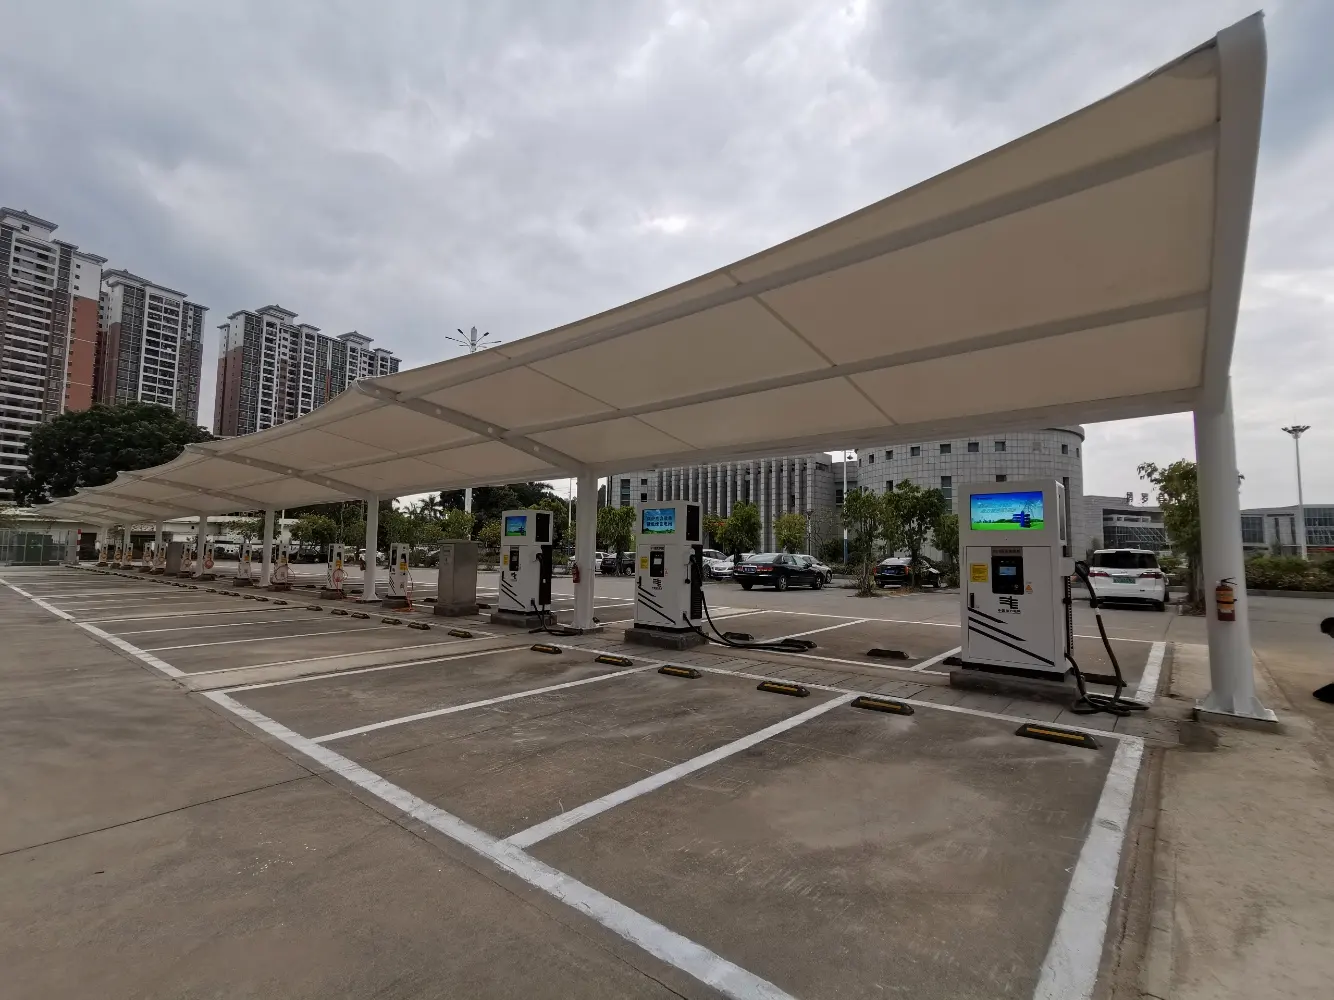 山东成都市支持氢能暨新能源汽车产业发展及推广应用若干政策实施细则(充换电设施部分)